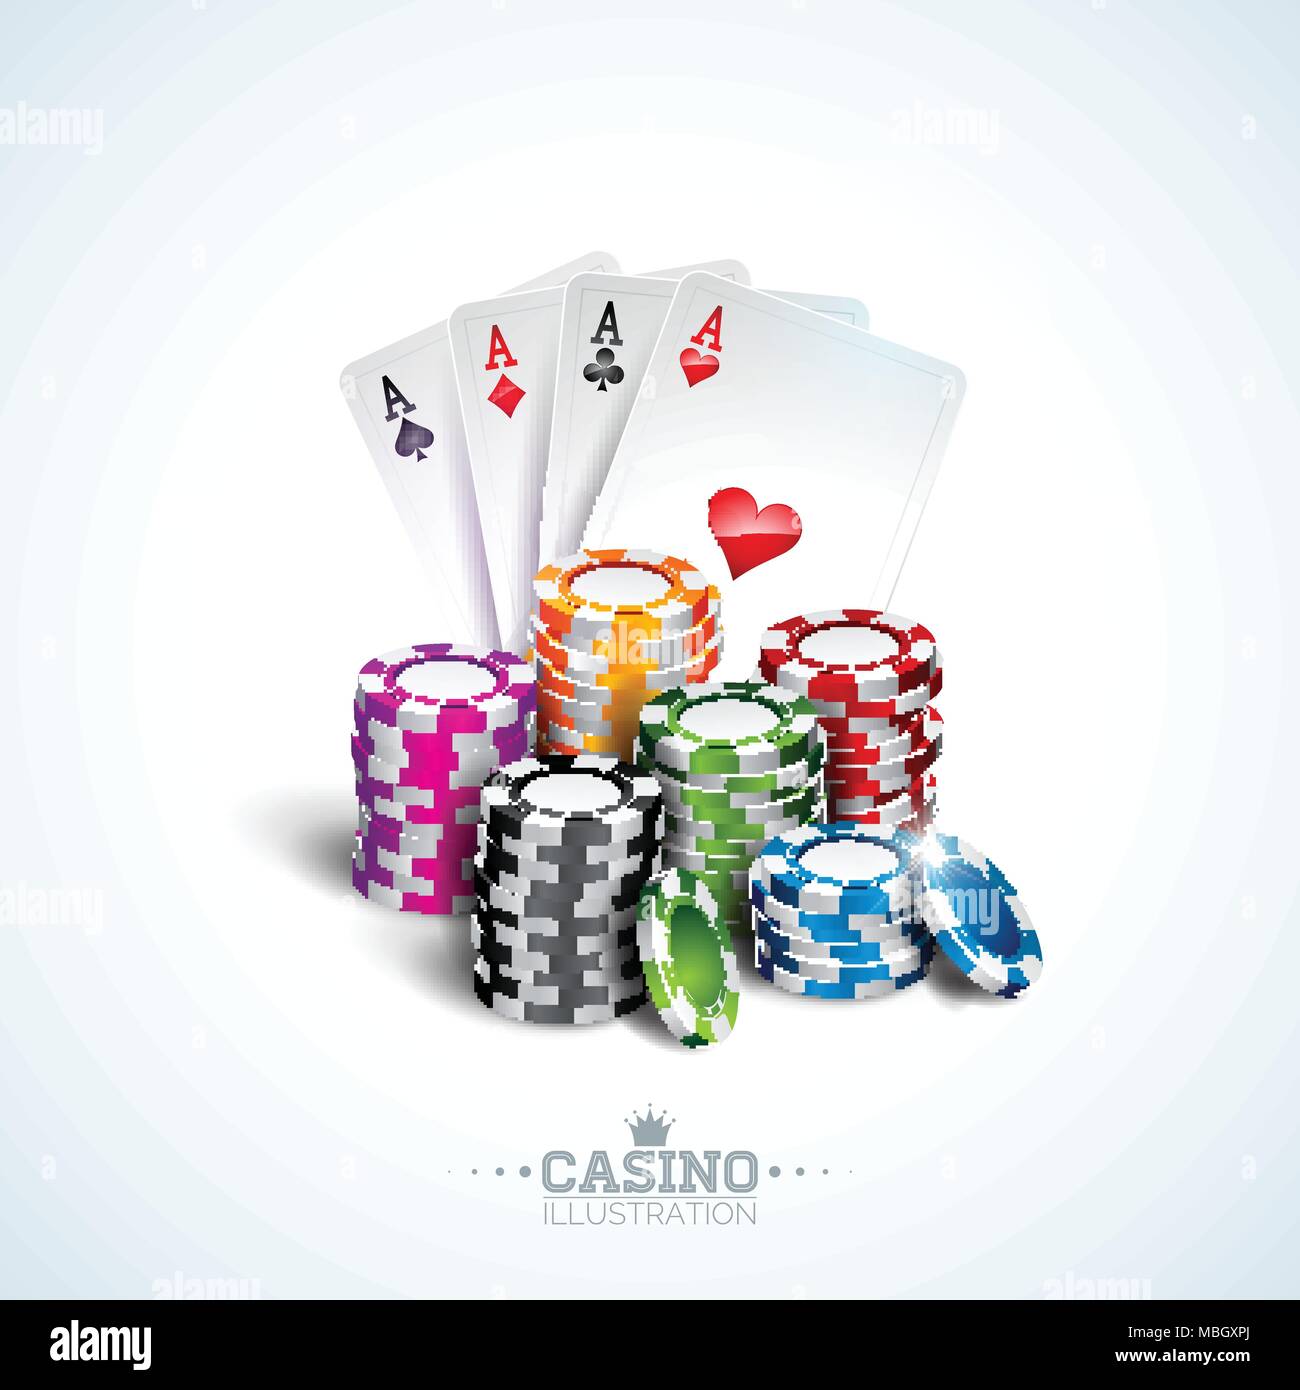 Illustrazione Vettoriale su un tema di casinò con carte da poker e la riproduzione di chip su sfondo bianco. Il design del gioco d'azzardo per invito o banner promozionali. Illustrazione Vettoriale